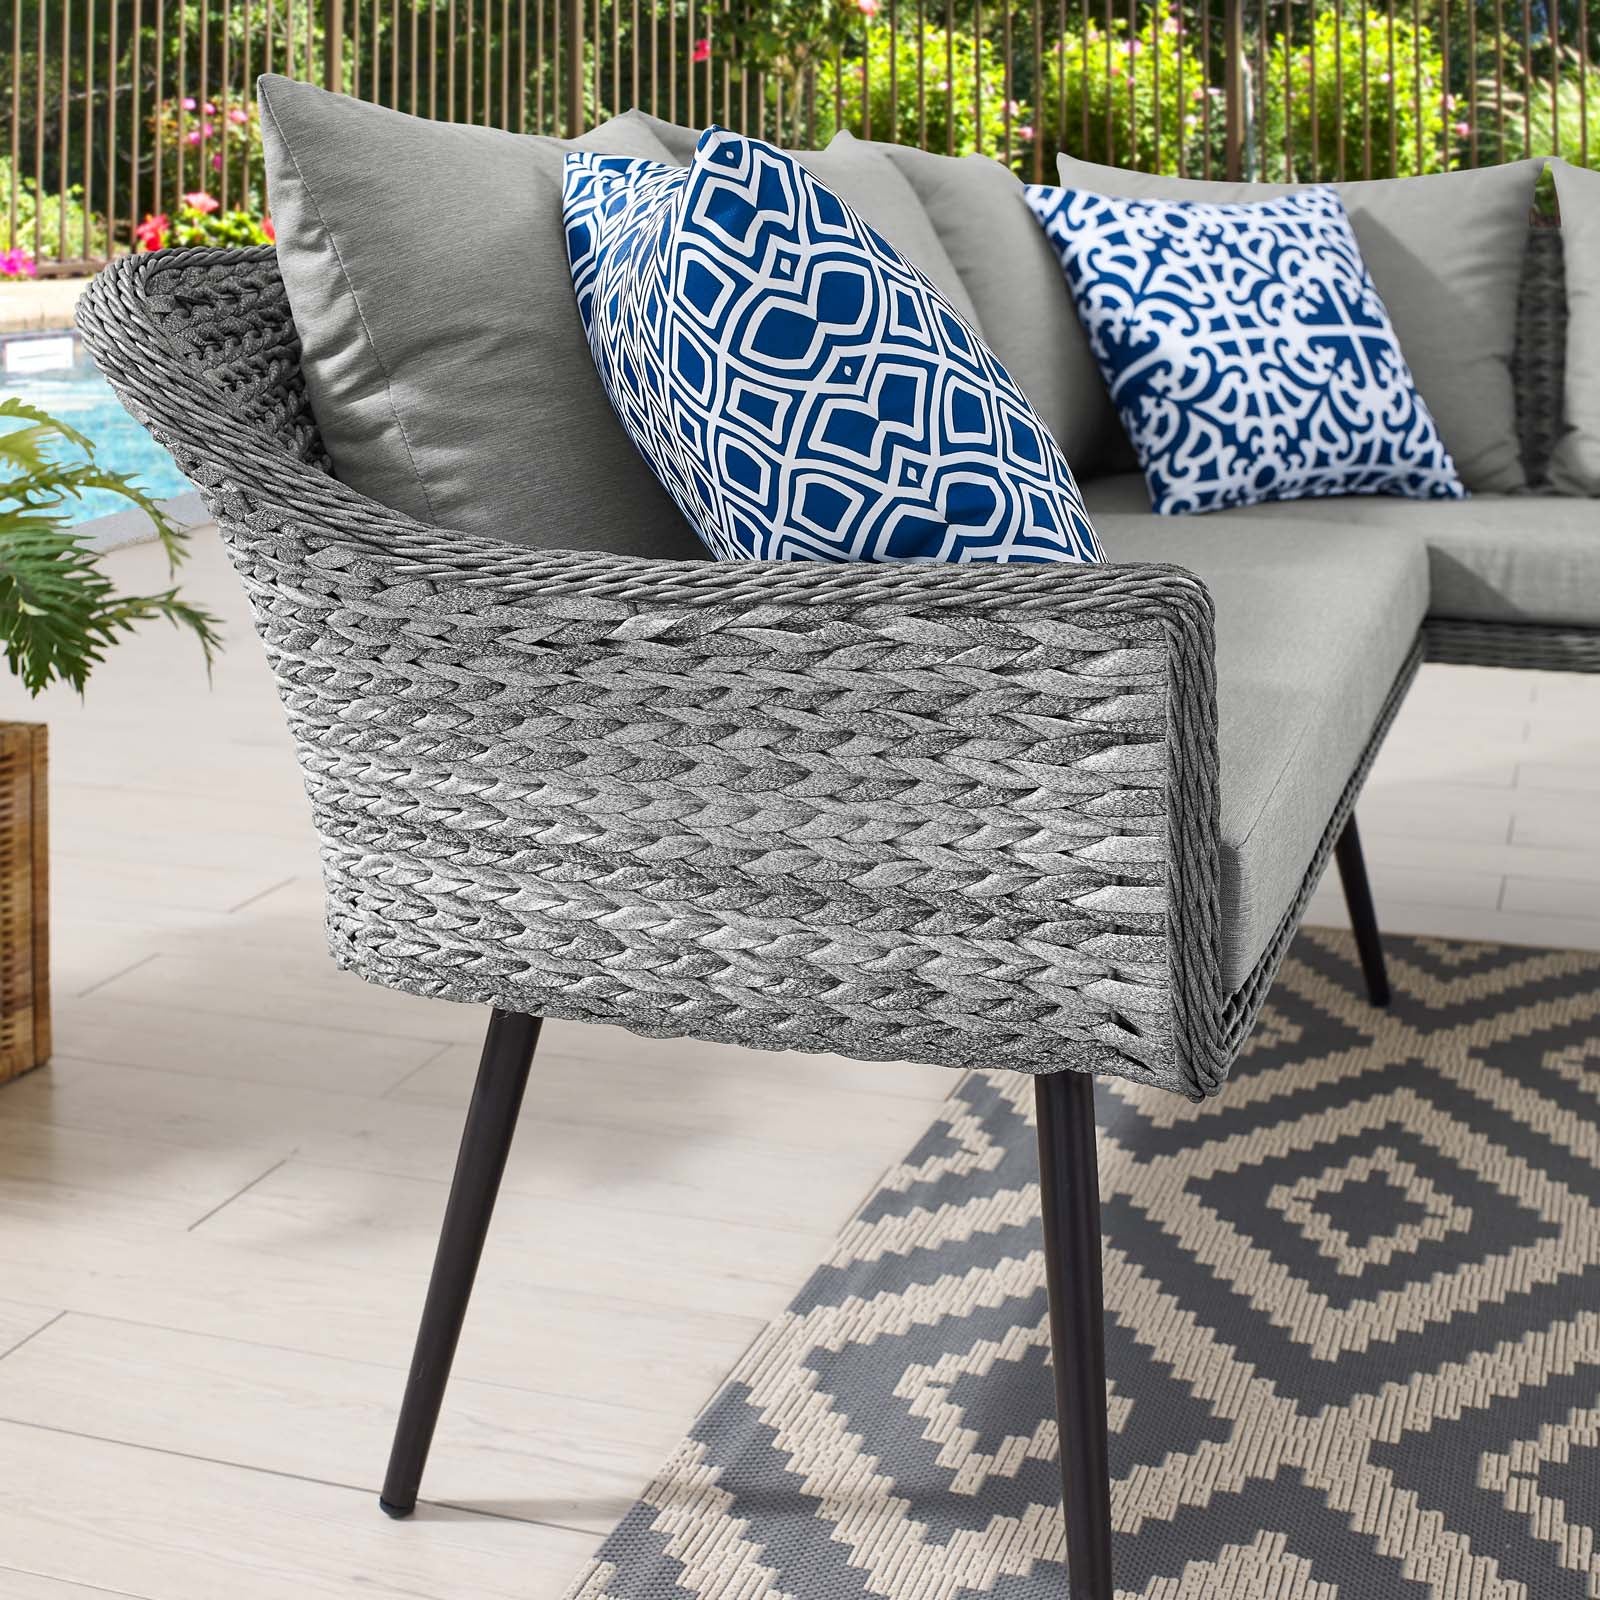 Modway Outdoor Sofas - Endeavor Outdoor Patio Wicker Rattan Sectional Sofa Gray